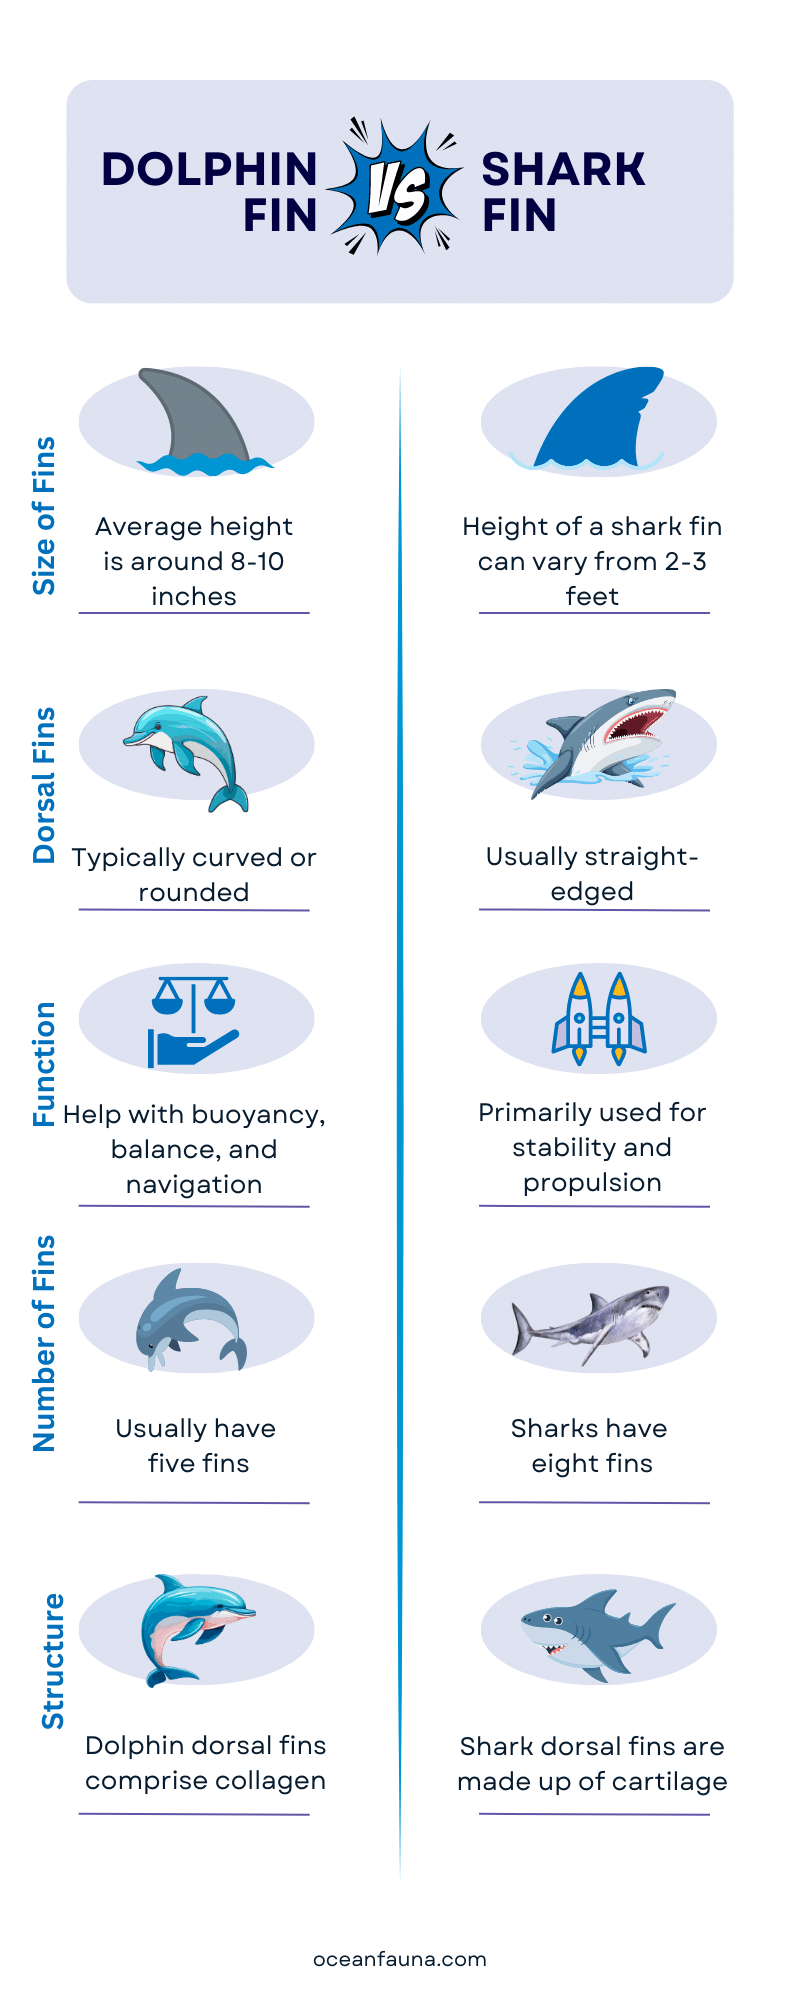 Dolphin-fin-vs-Shark-fin